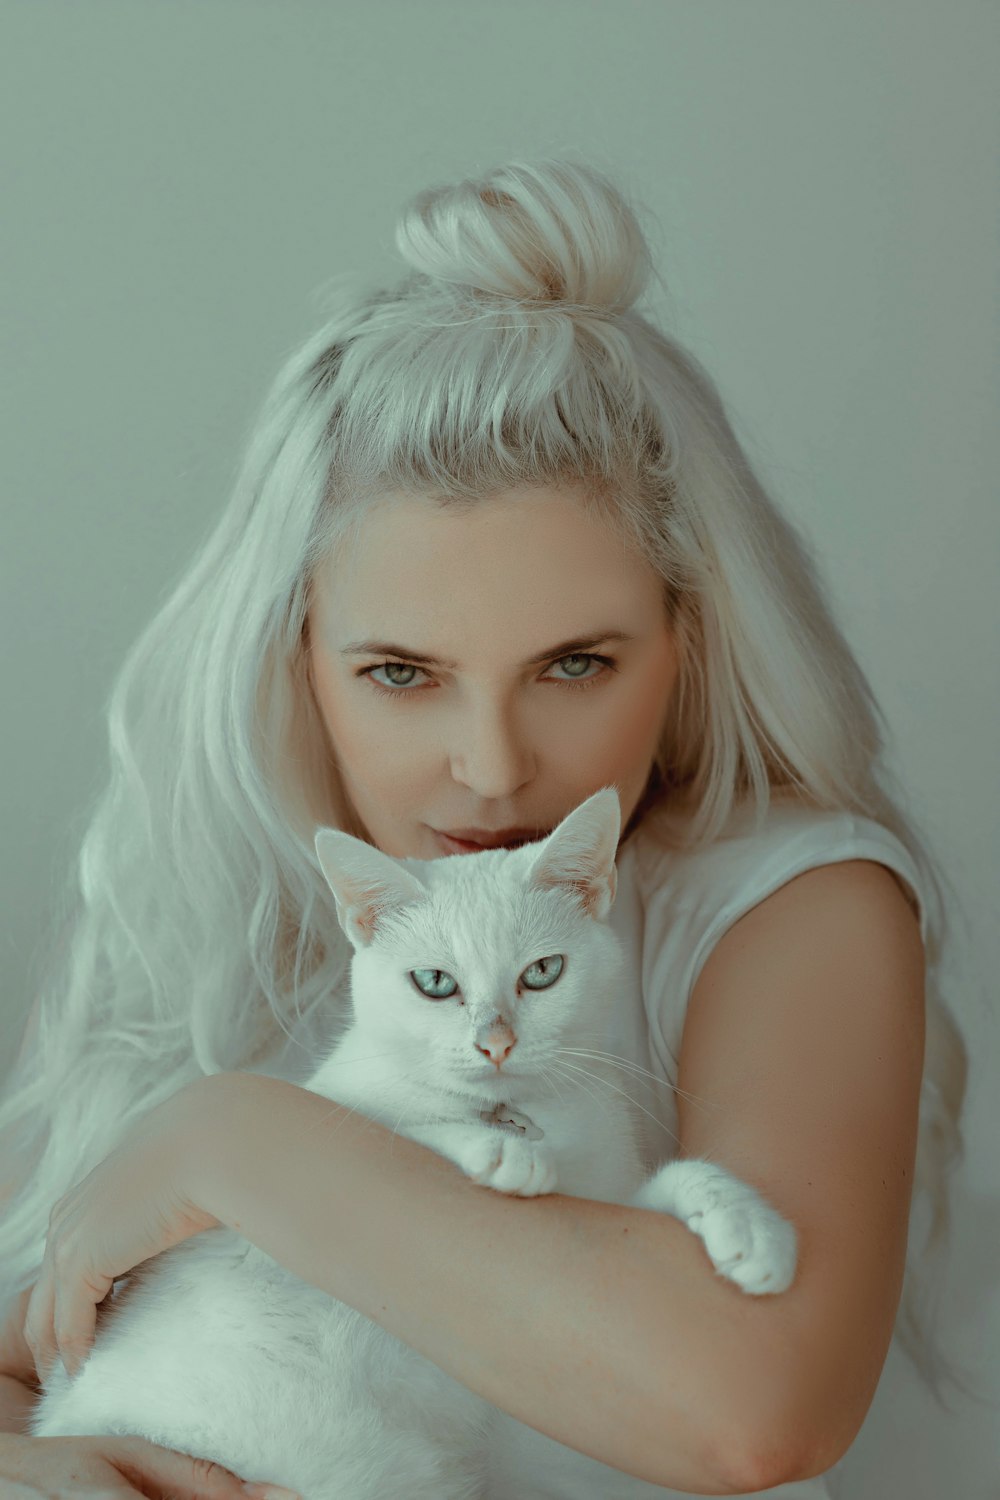 그녀의 무릎에 하얀 고양이와 흰색 탱크 탑에 여자